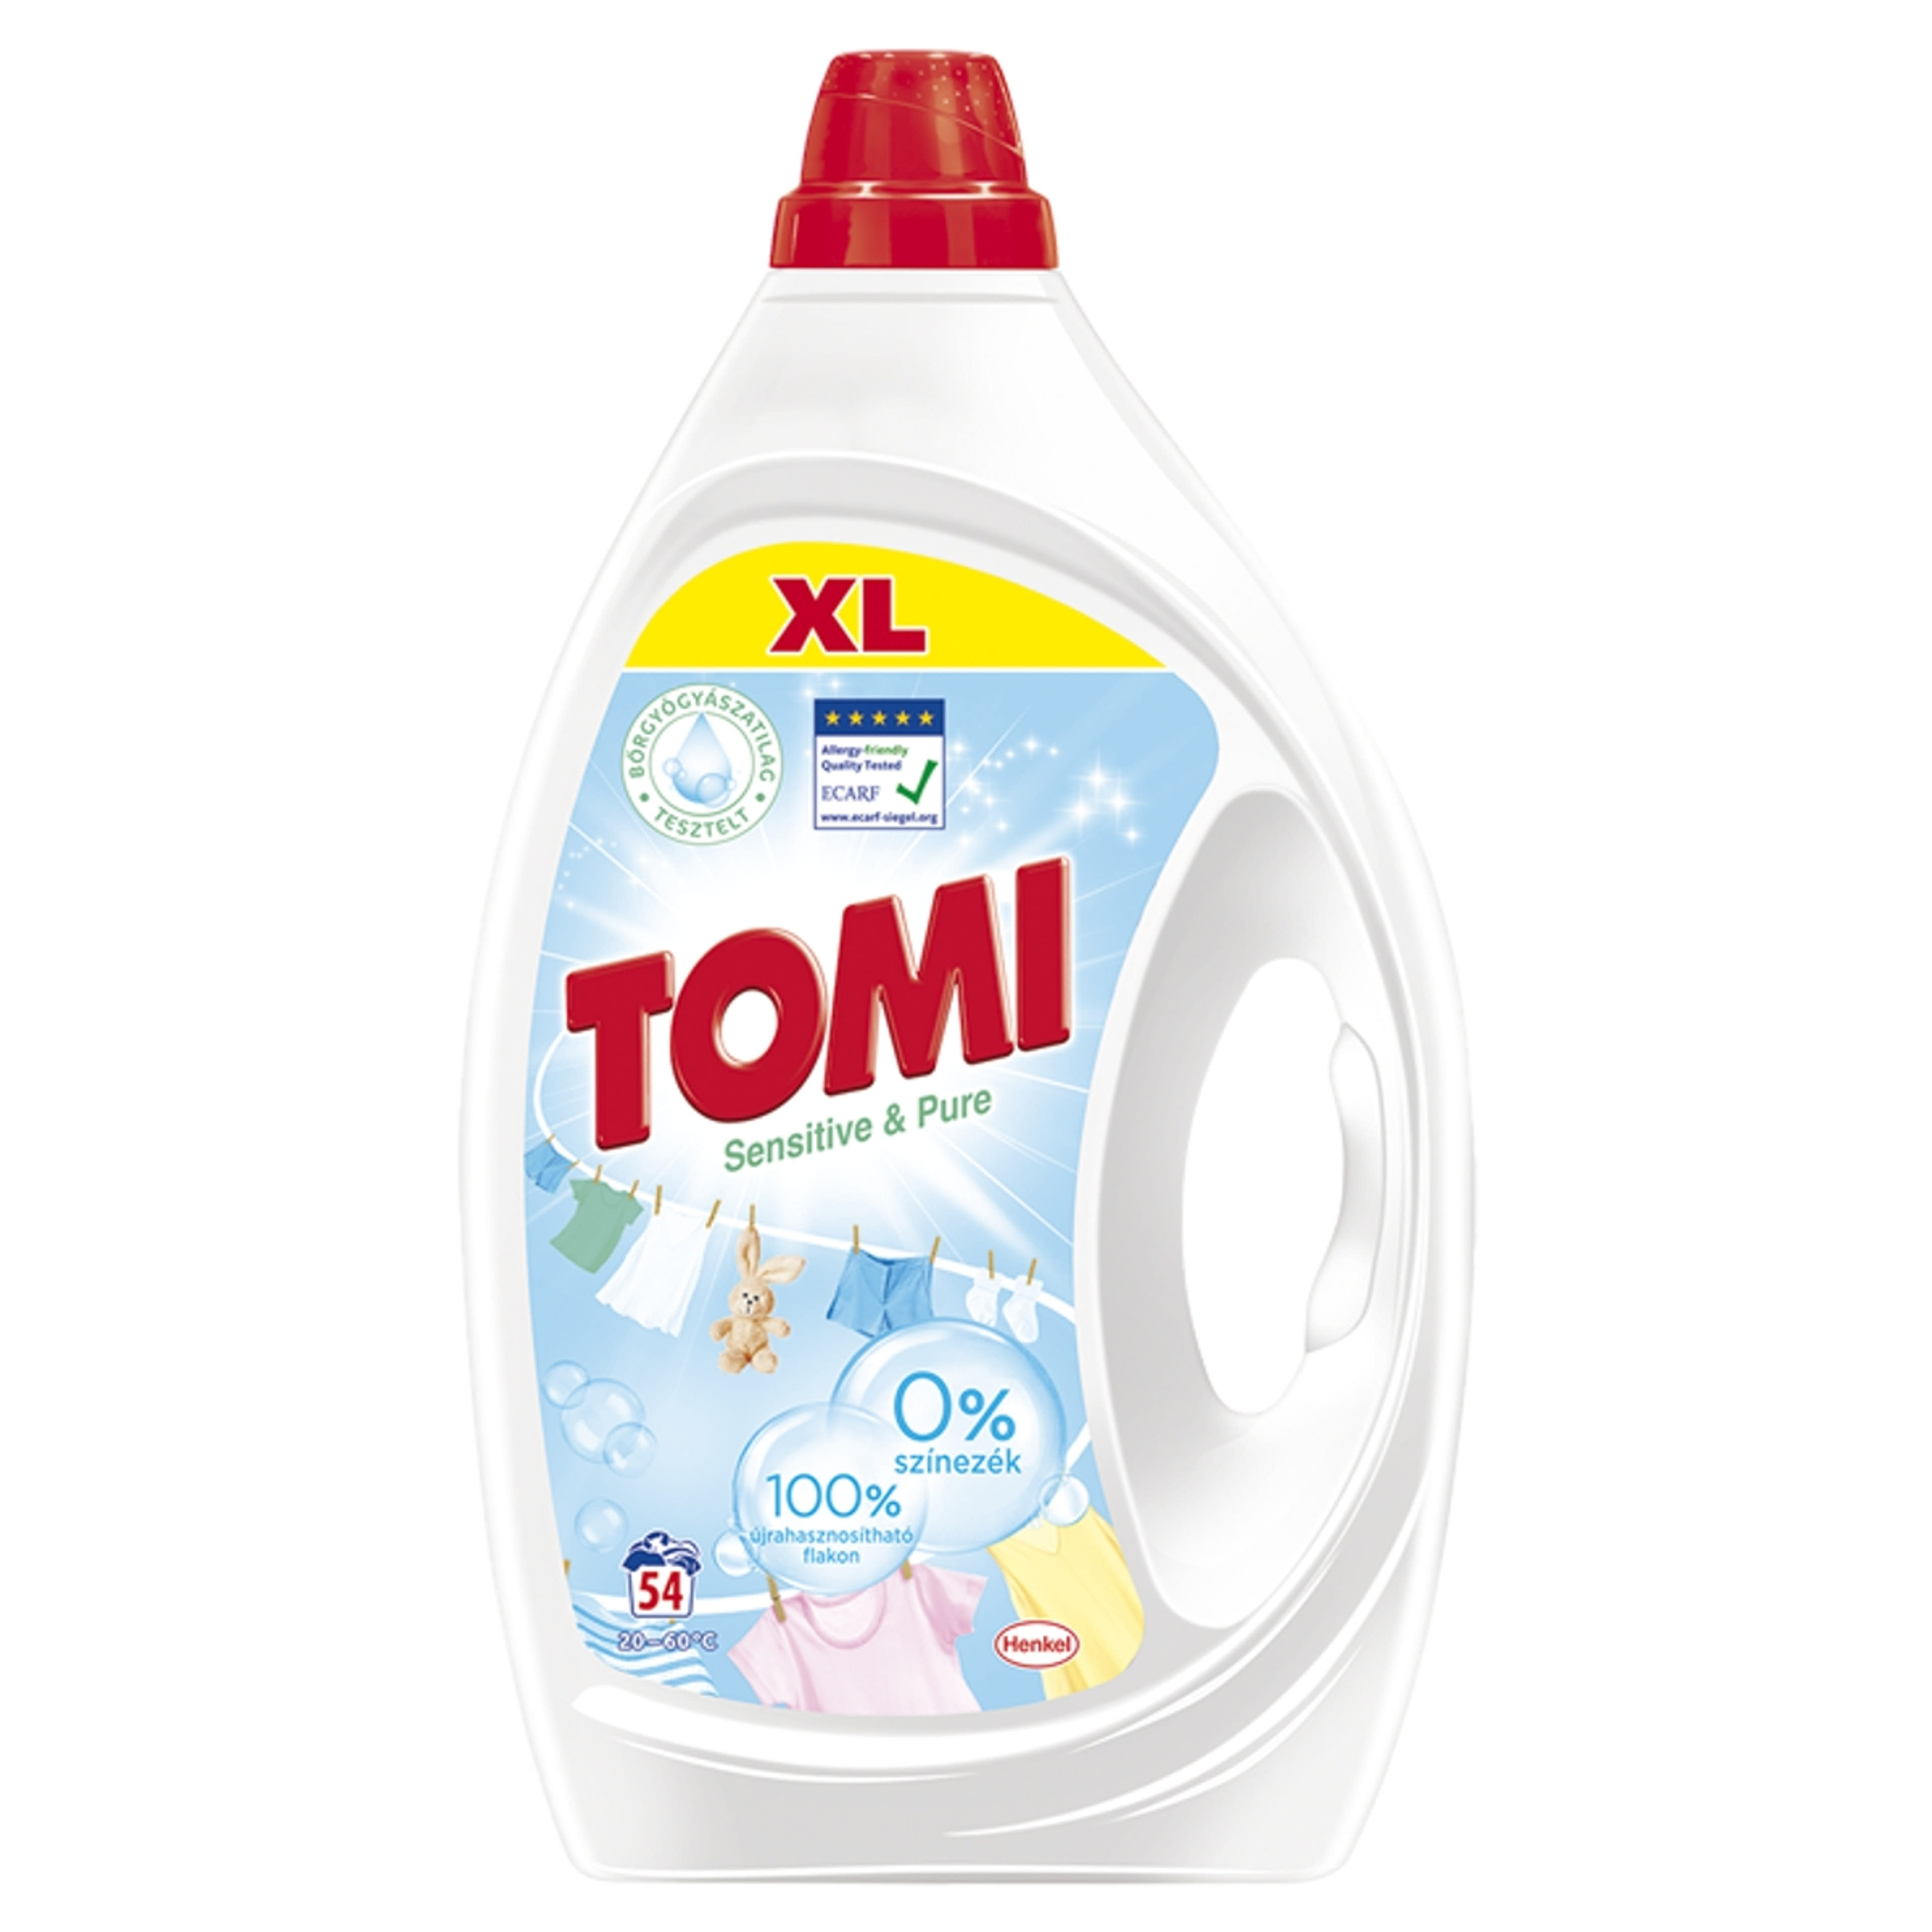 Tomi Sensitive & Pure folyékony mosószer 54 mosás - 2430 ml-1